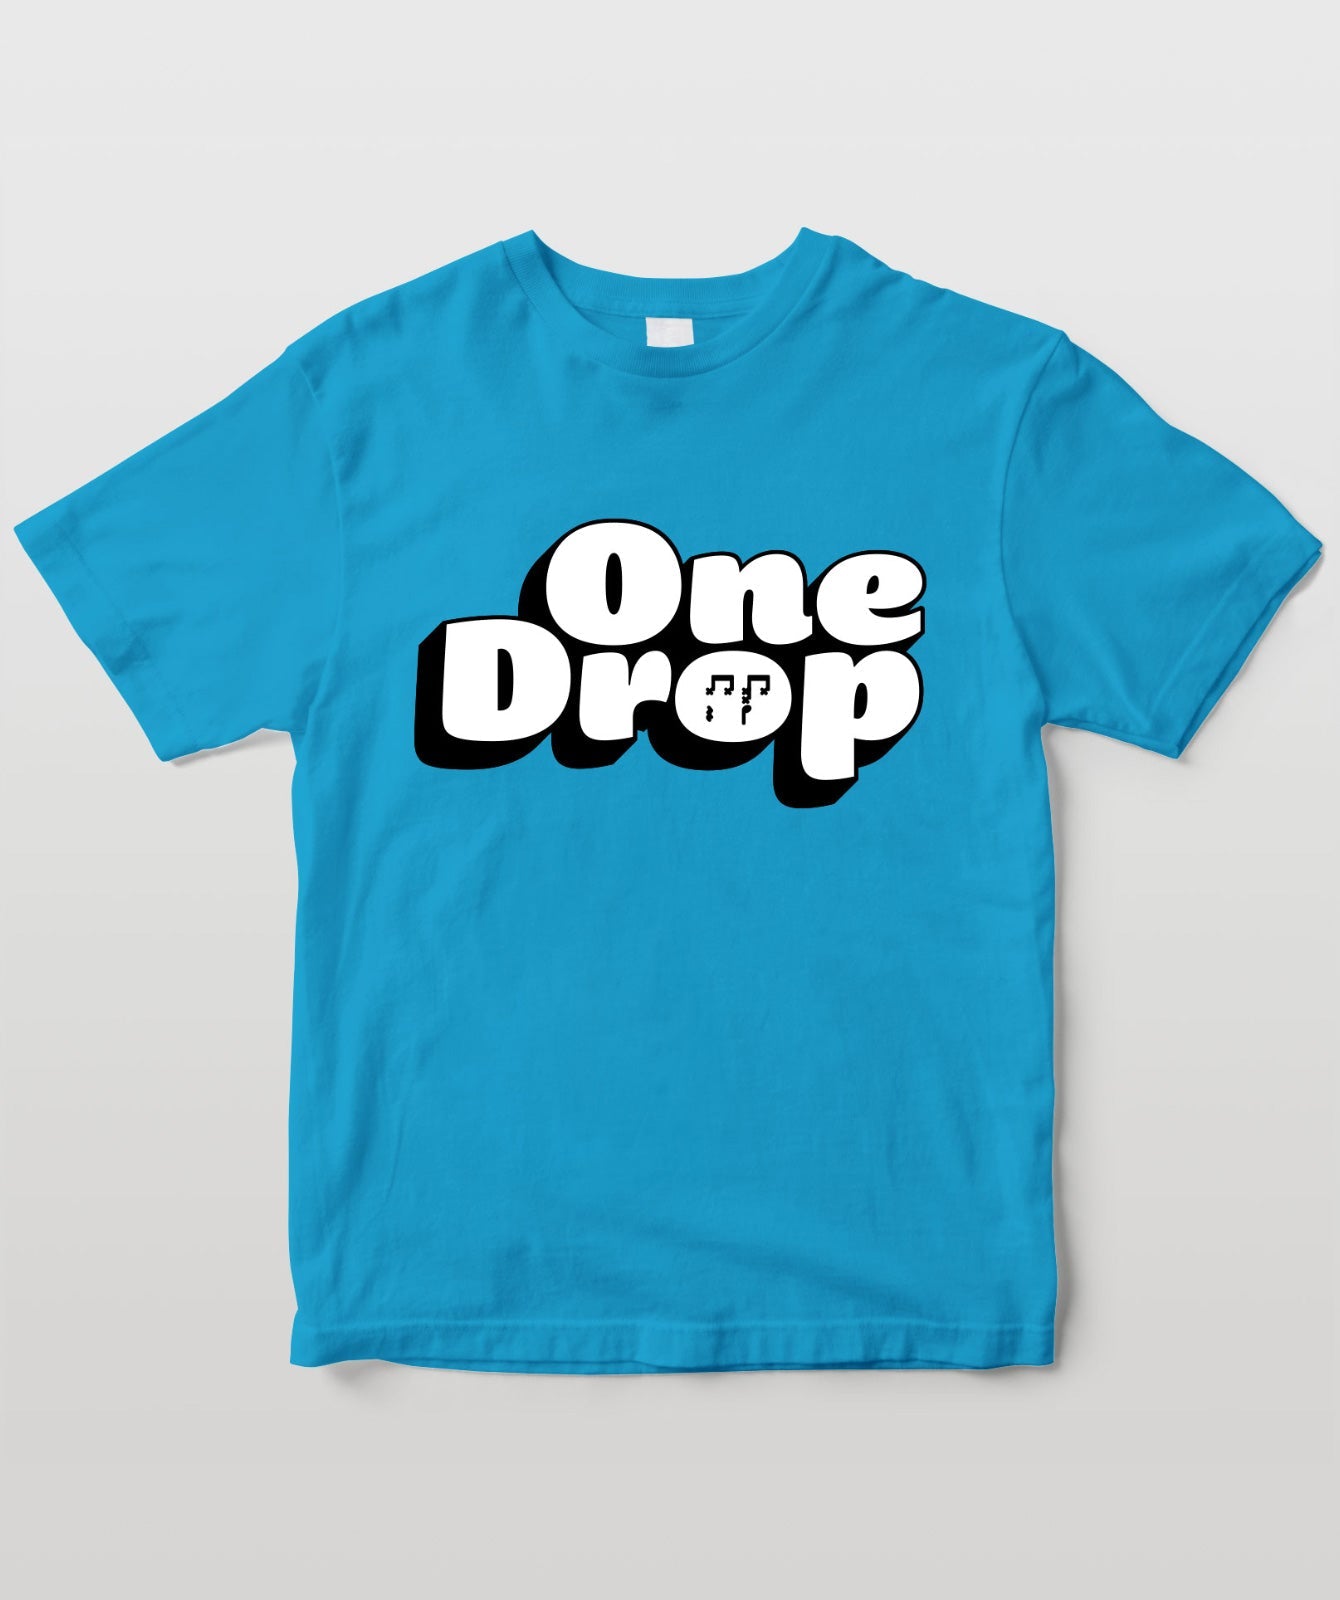 リズム・パターン Tシャツ “One Drop”